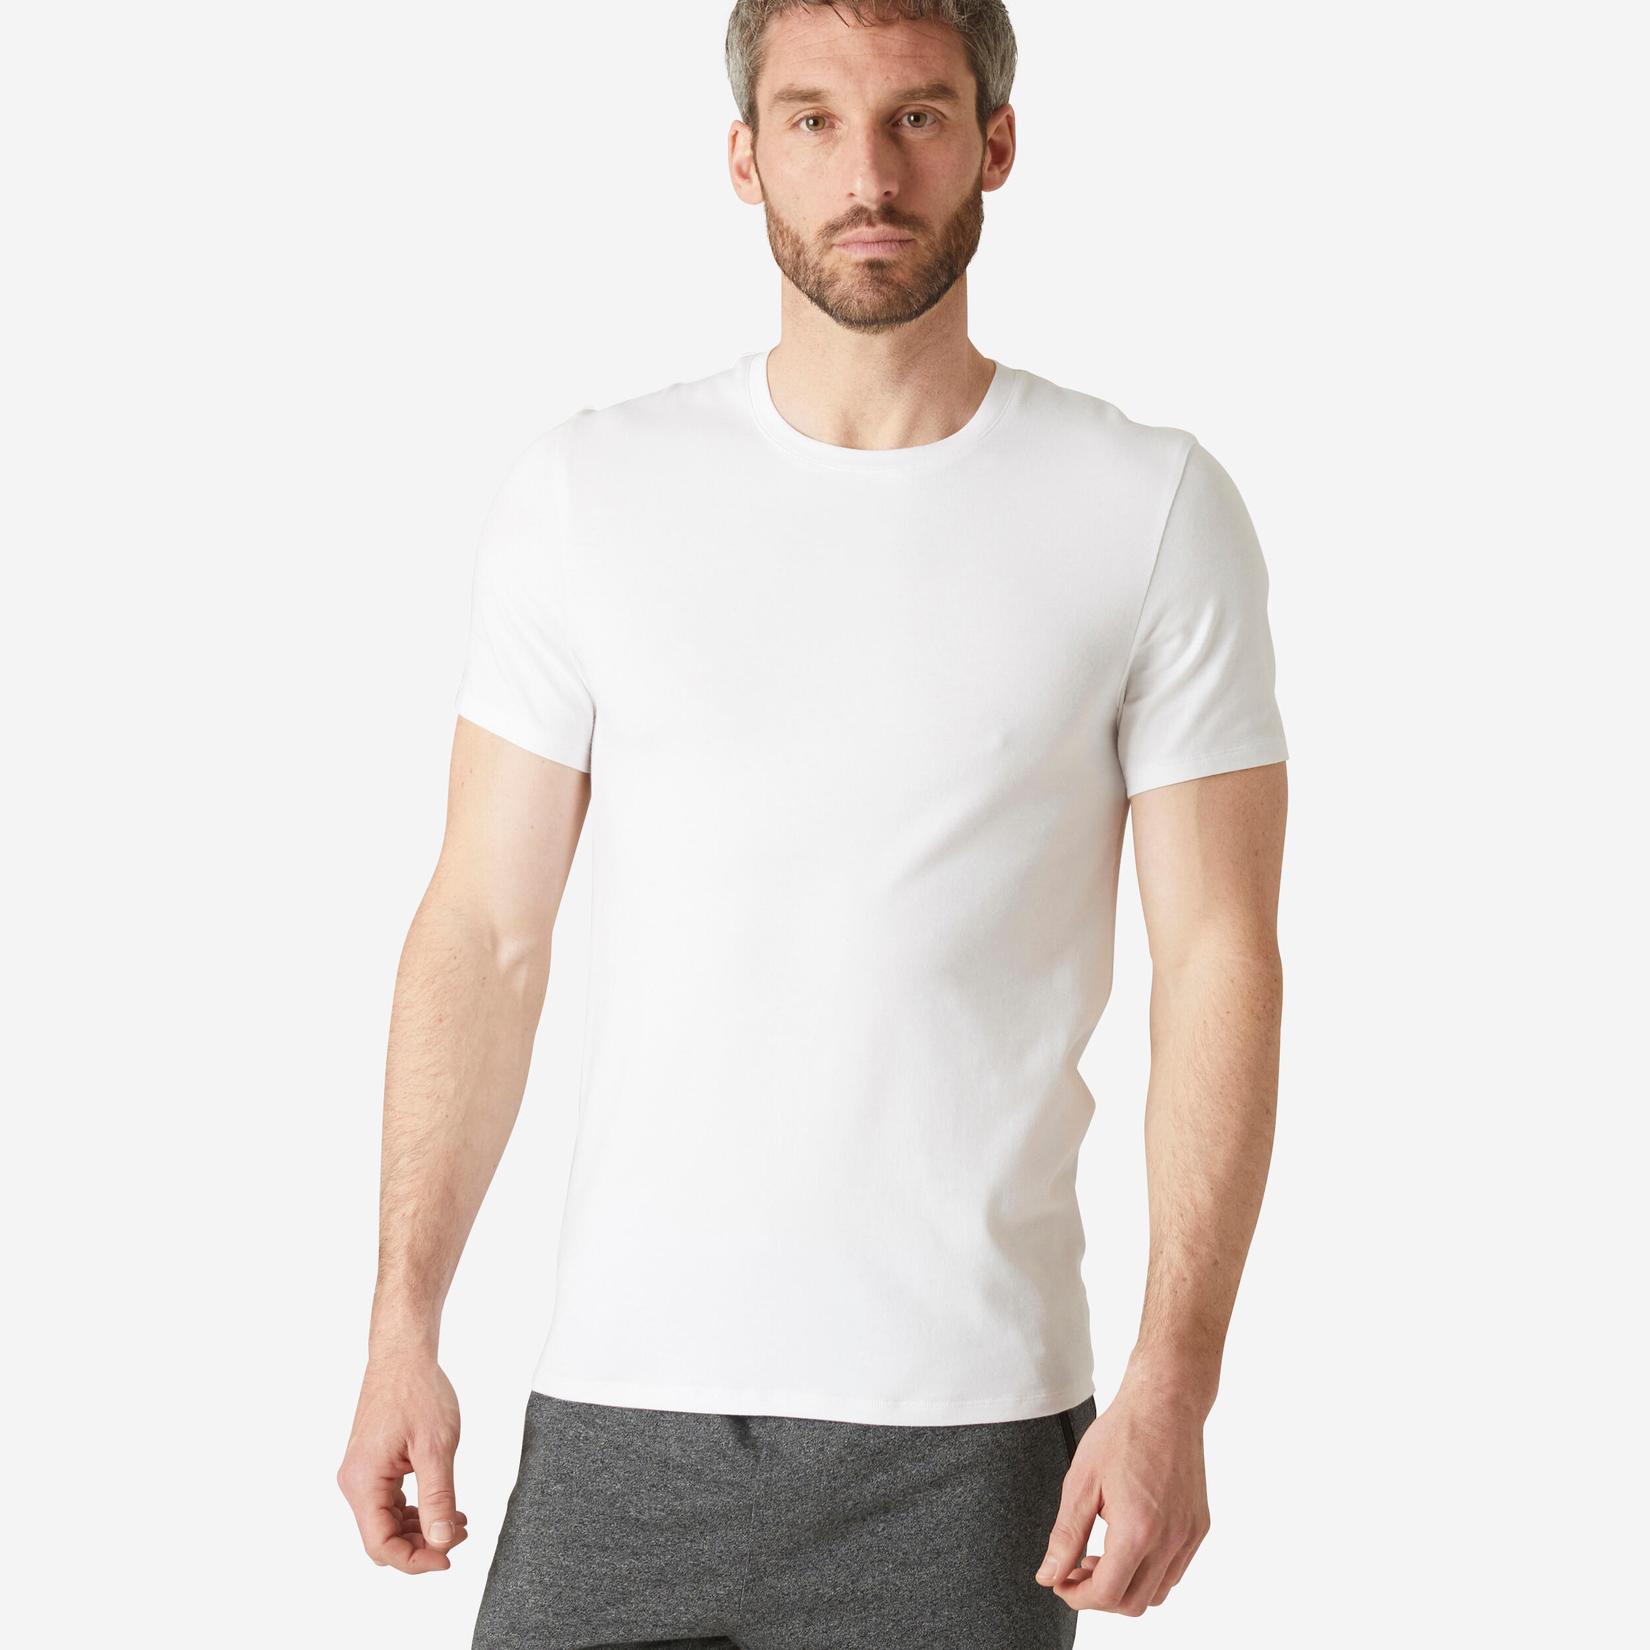 T-Shirt Herren Slim - 500 weiss für 8,99€ in Decathlon